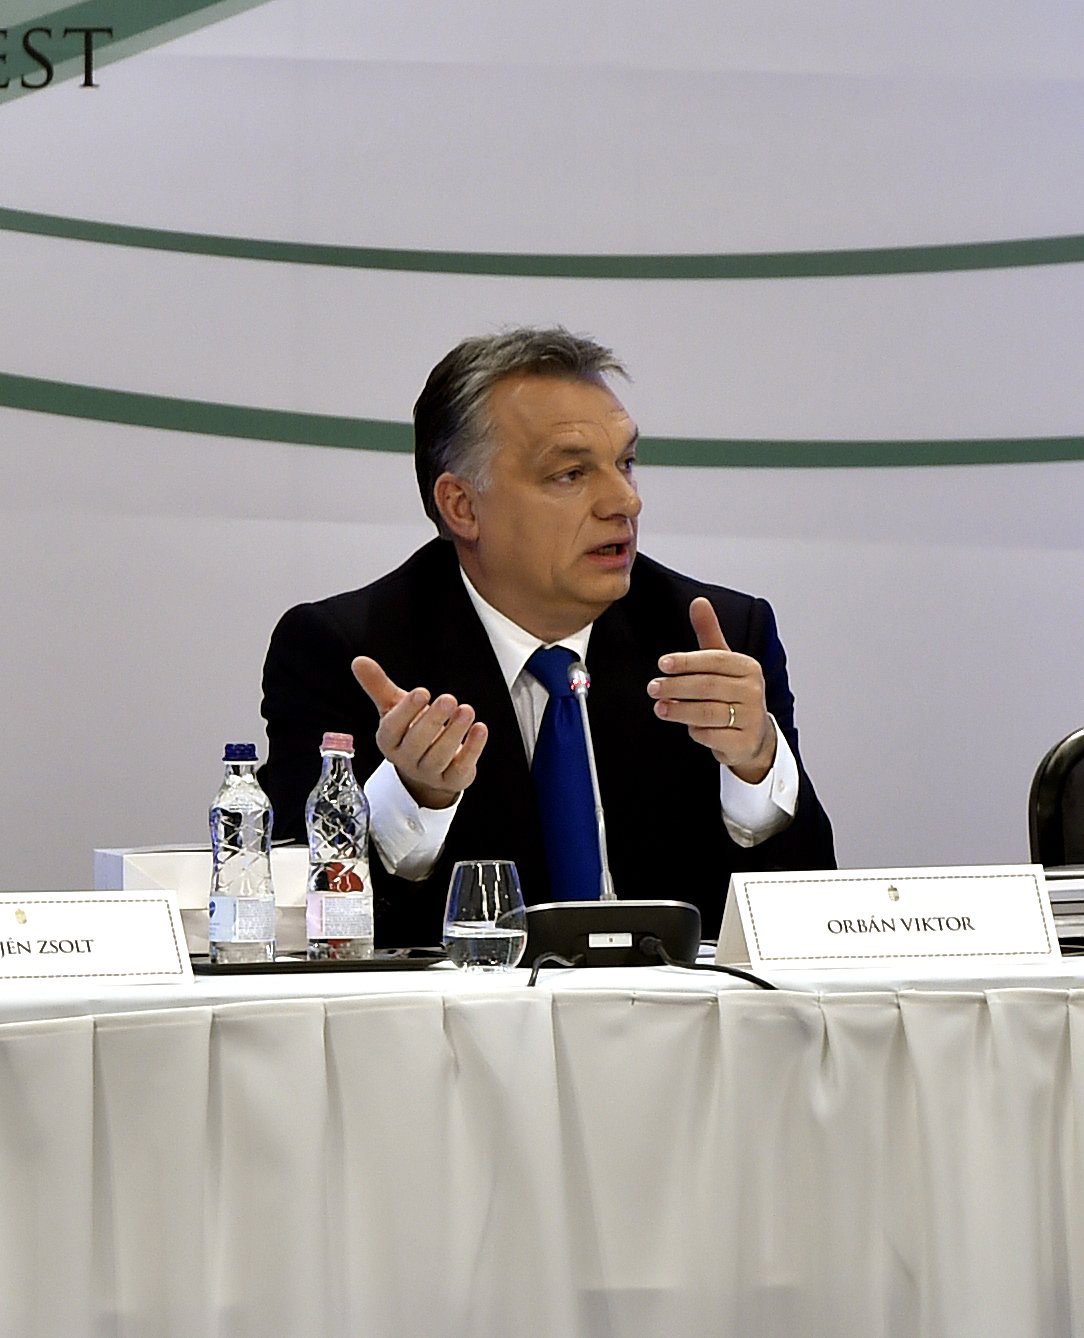 Orbán szerint Amerika már rendben van, de Európában még van tennivaló, hogy elbukjon végre a politikai korrektség